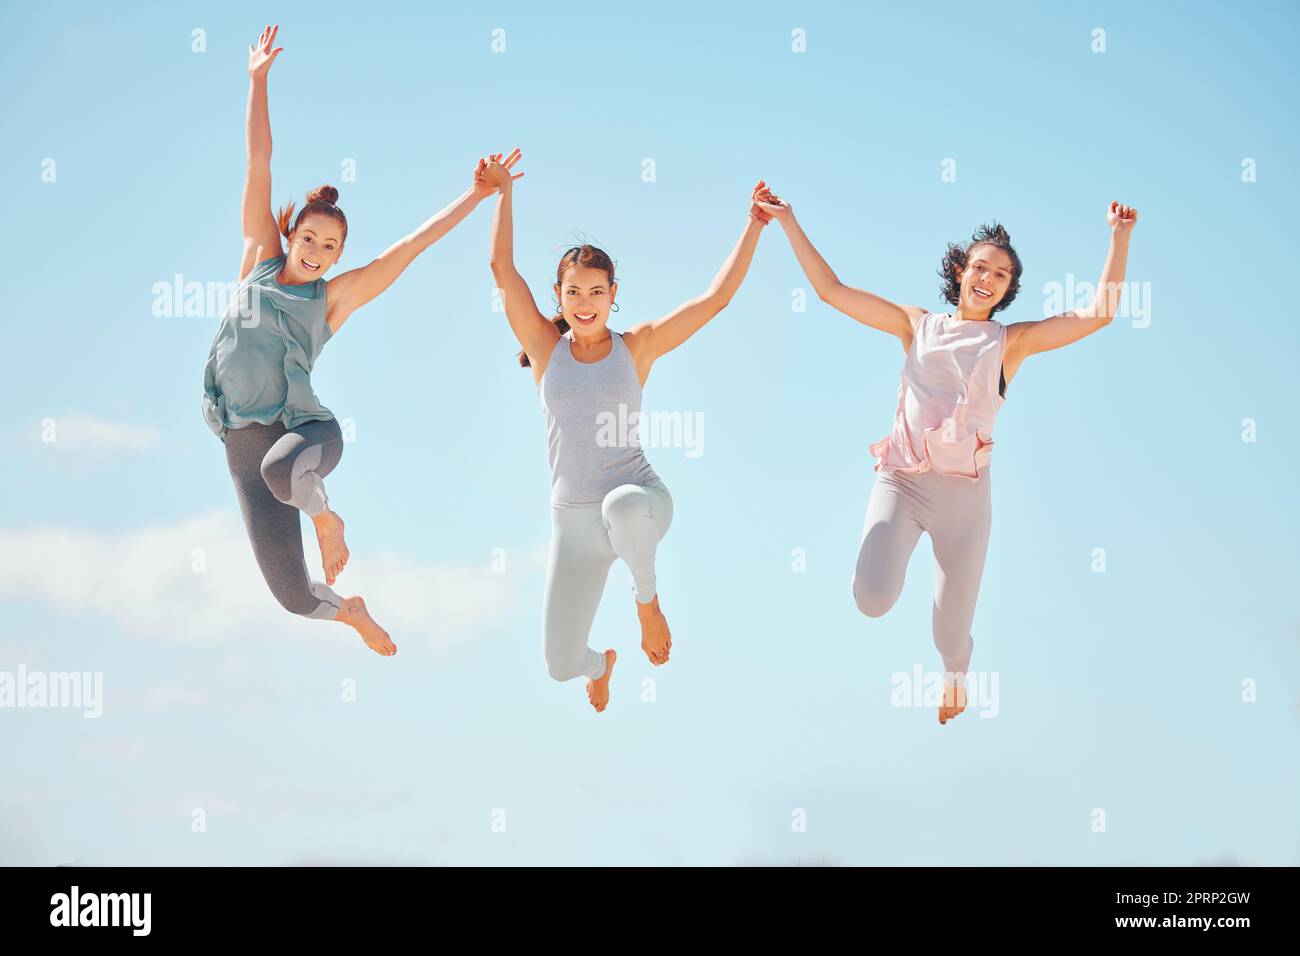 Fitness, Sportfreunde oder Frauen springen mit blauem Himmel und Hintergrund. Wellness-, Energie- und sorglose Menschen, die in ein lustiges Training springen oder im Sommer mit Sonnenschein und Mock-up im Freien trainieren Stockfoto